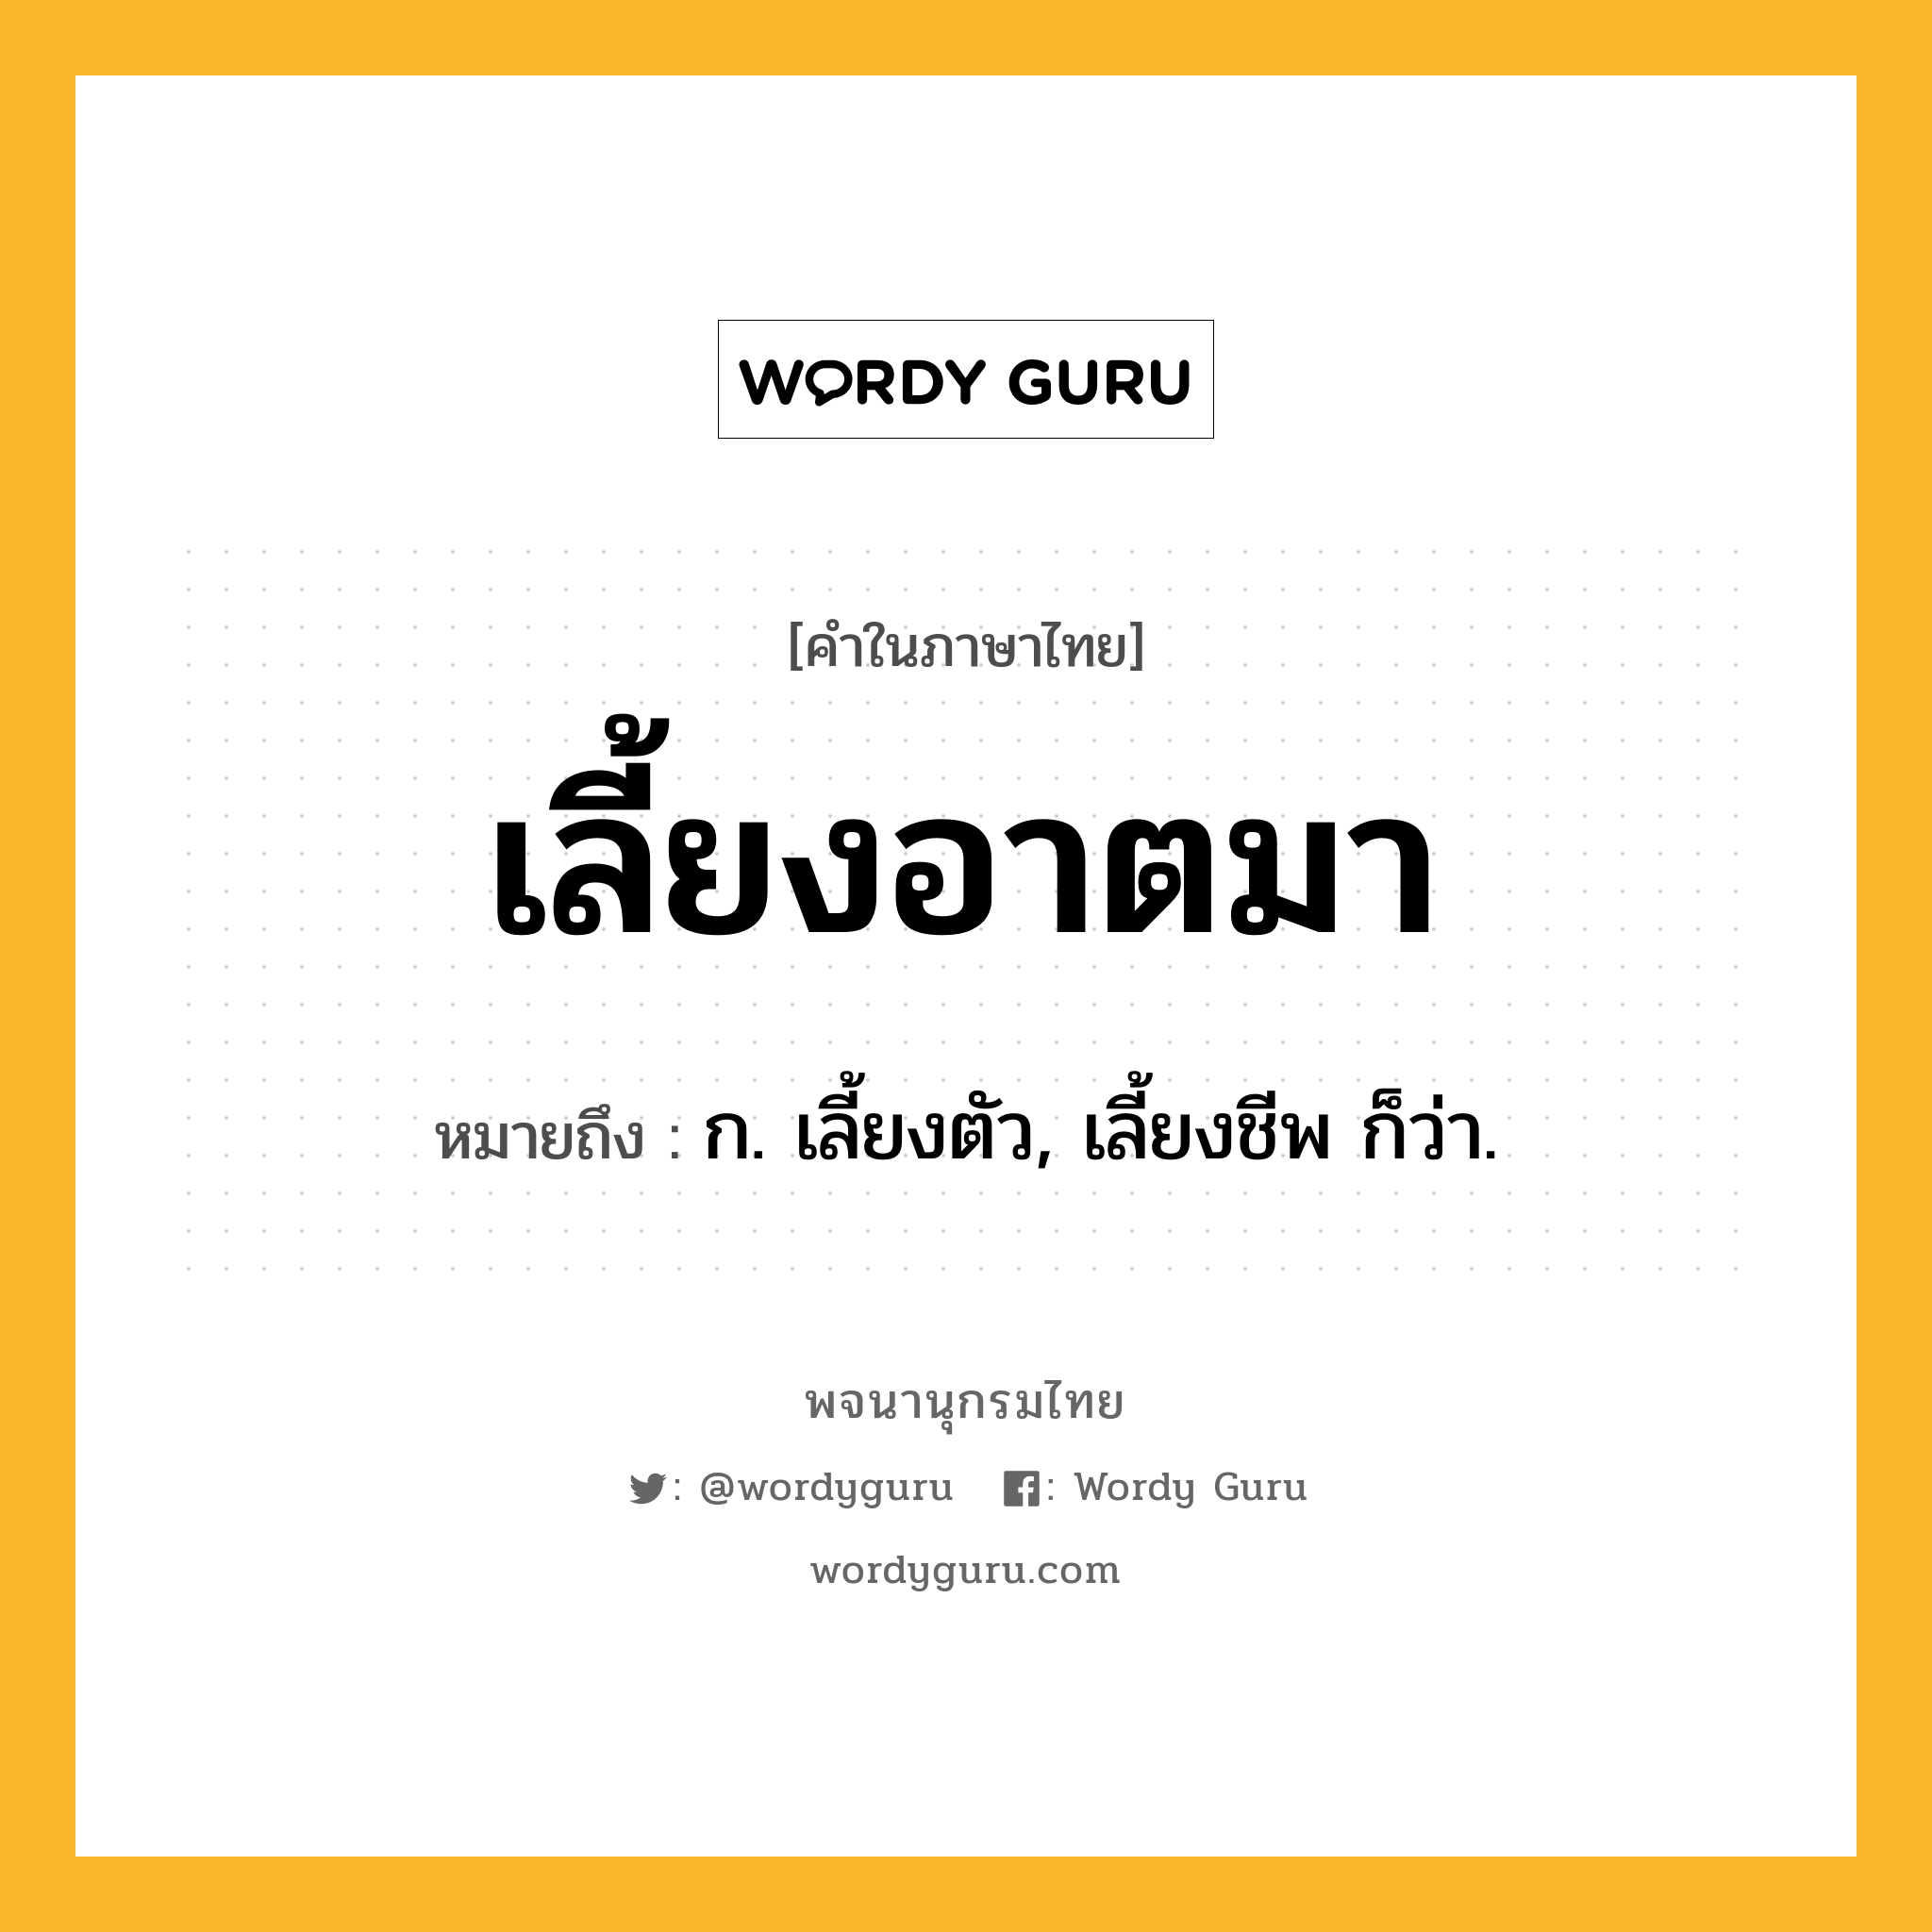 เลี้ยงอาตมา ความหมาย หมายถึงอะไร?, คำในภาษาไทย เลี้ยงอาตมา หมายถึง ก. เลี้ยงตัว, เลี้ยงชีพ ก็ว่า.